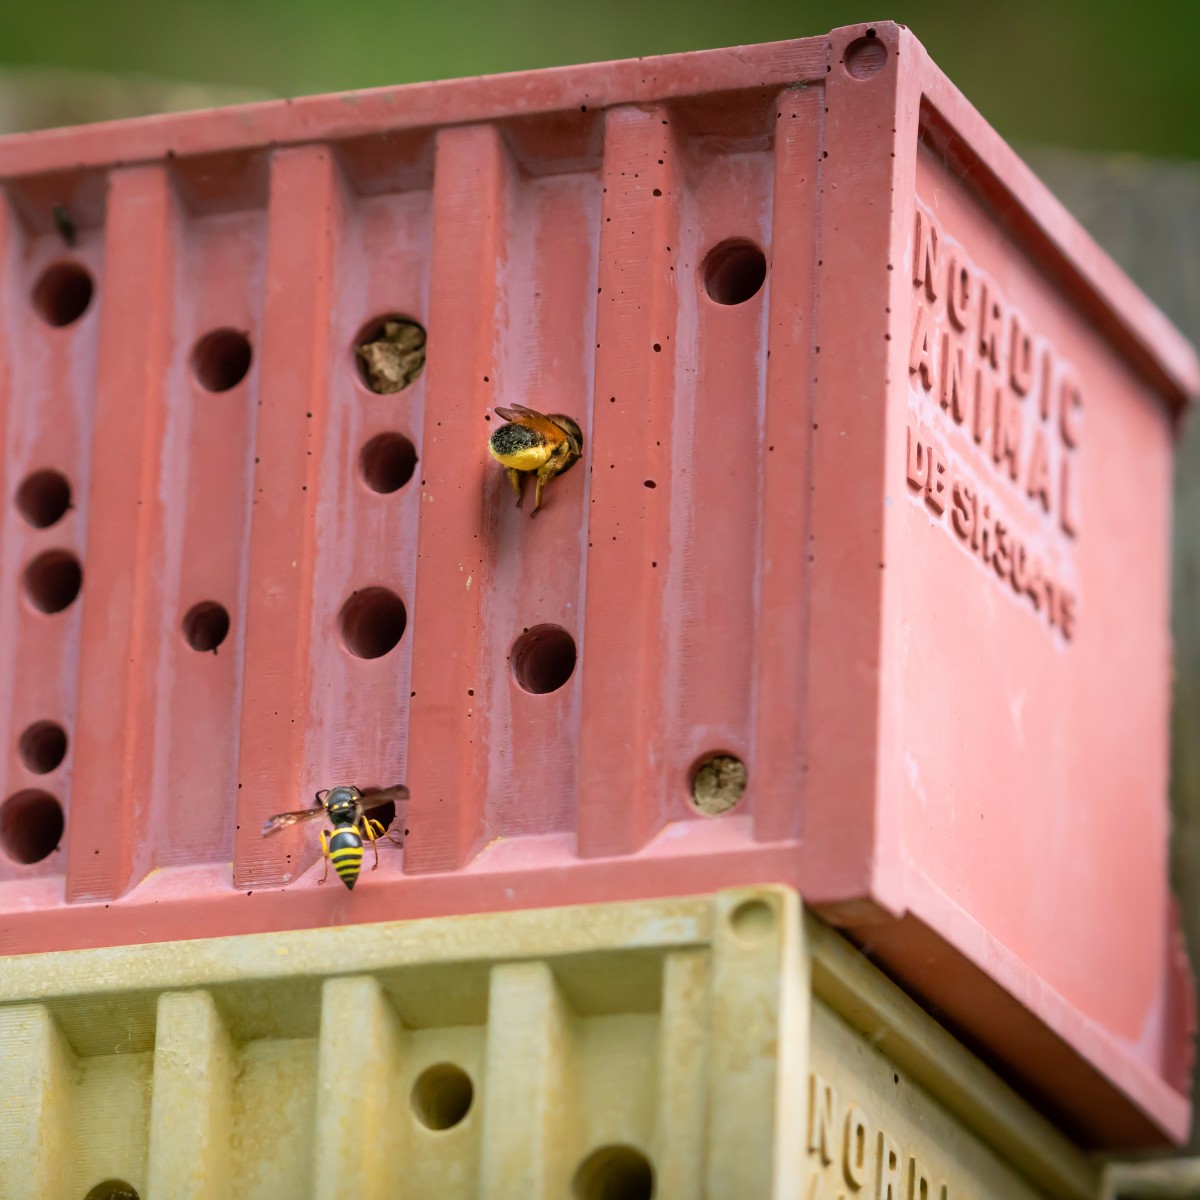 Bienenhotel aus Beton - beecontainer "Rot" im Überseecontainer-Design